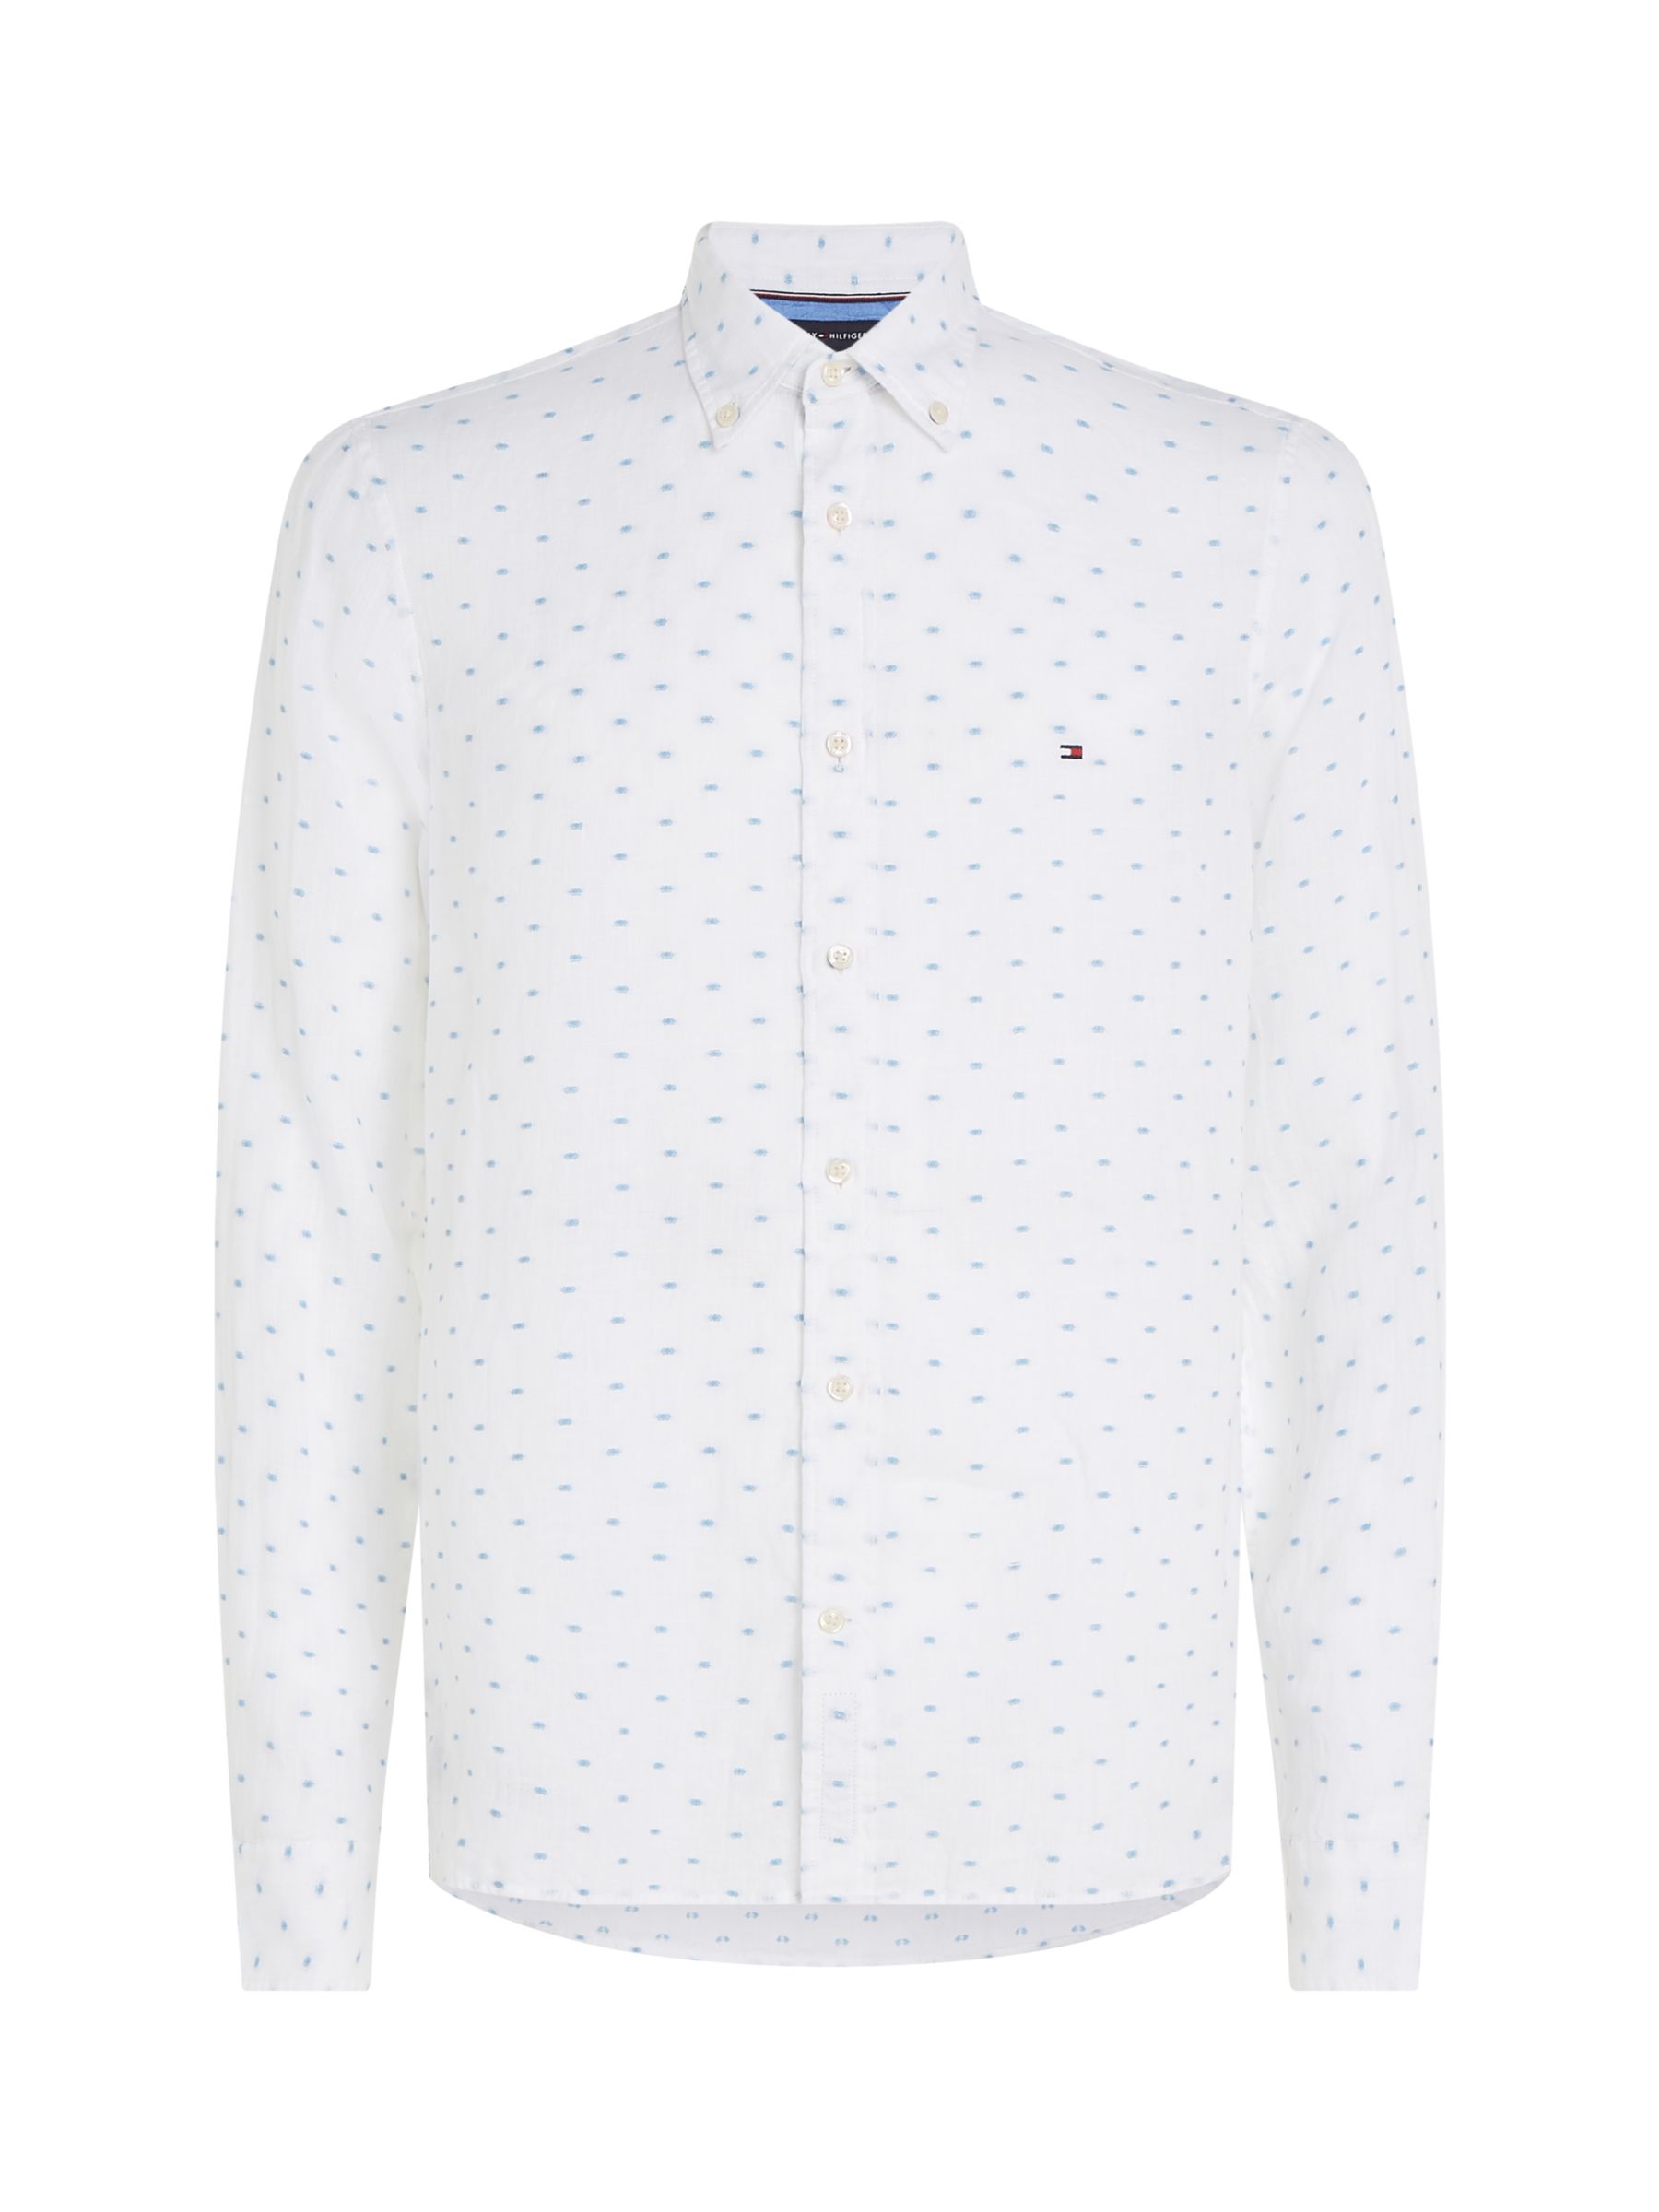 Buy Tommy Hilfiger Linen Polka Dot Shirt, White Online at johnlewis.com